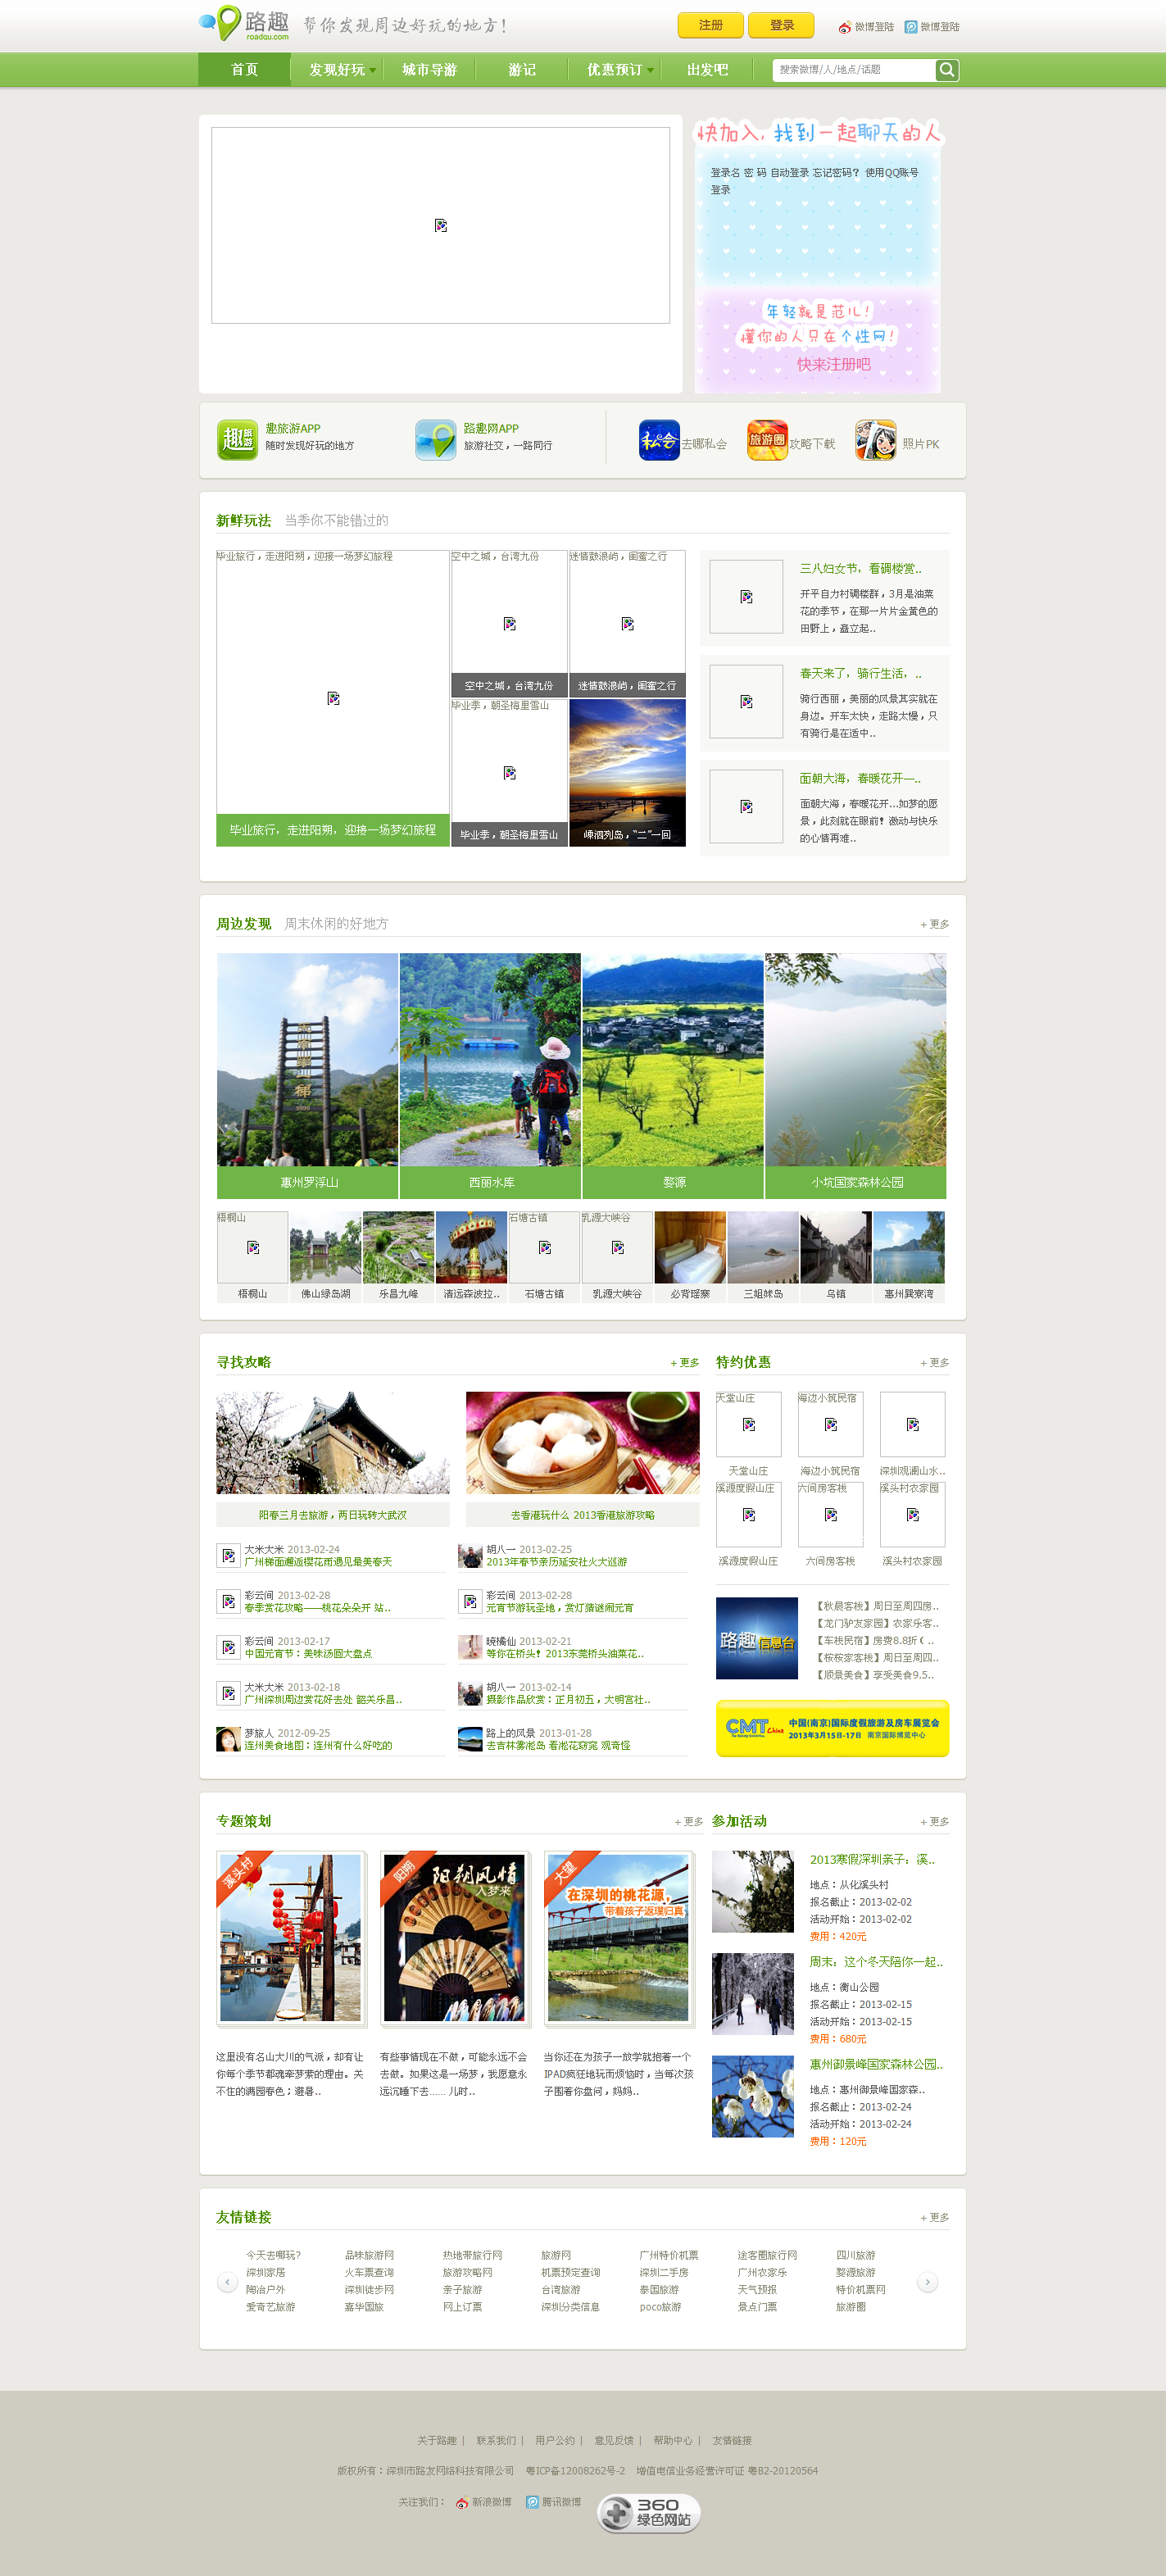 路趣网绿色的旅游社交网站模板全套html源码下载